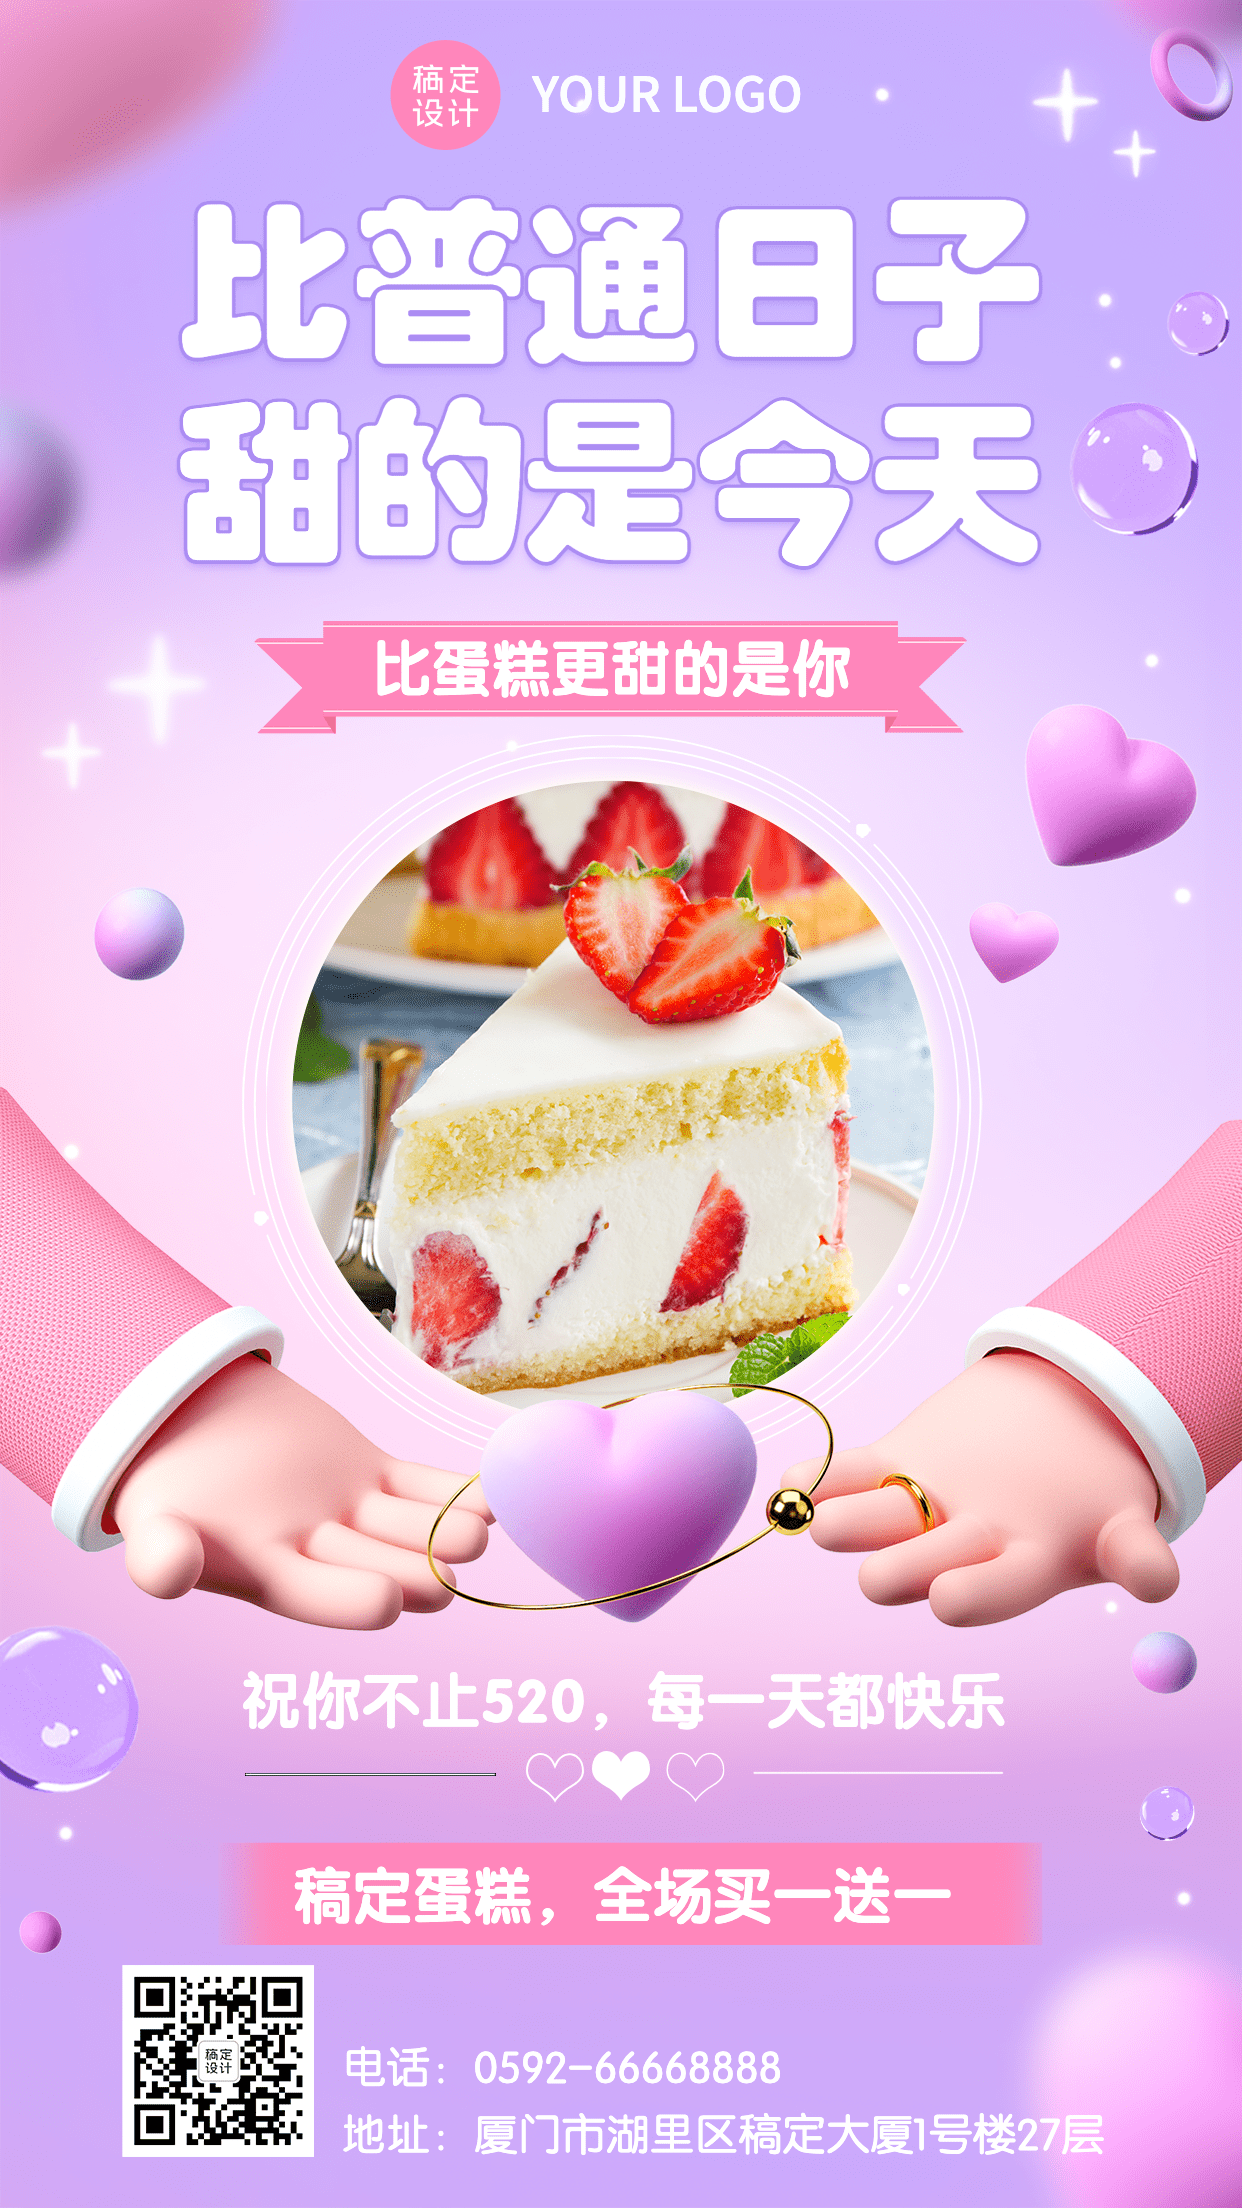 创意餐饮520情人节蛋糕烘焙活动营销手机海报预览效果